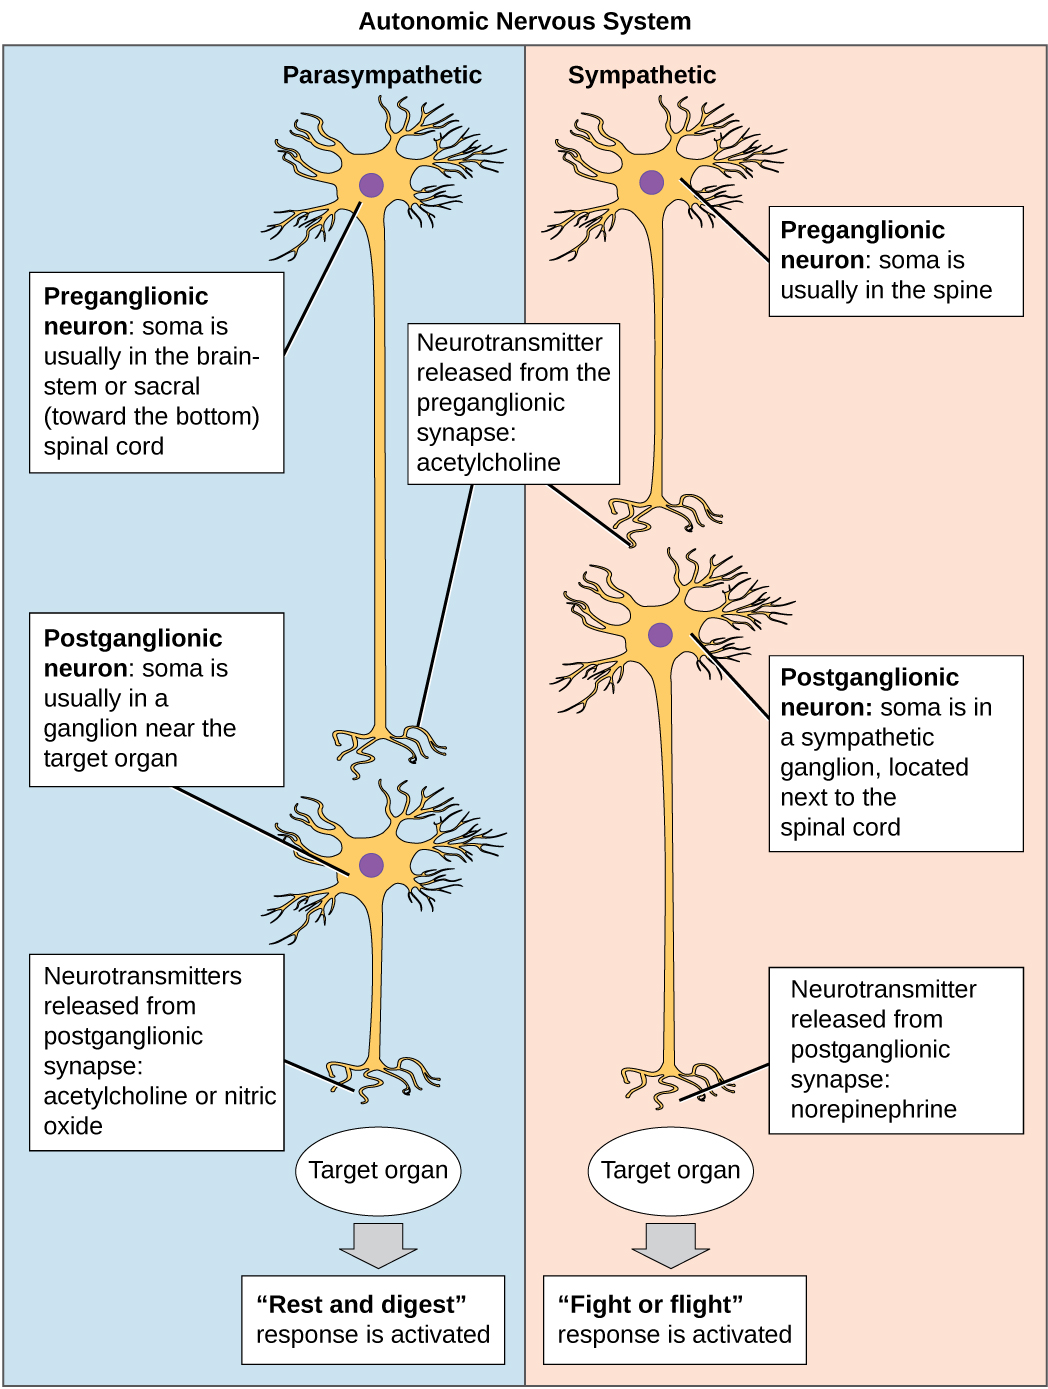 a preganglionic neuron